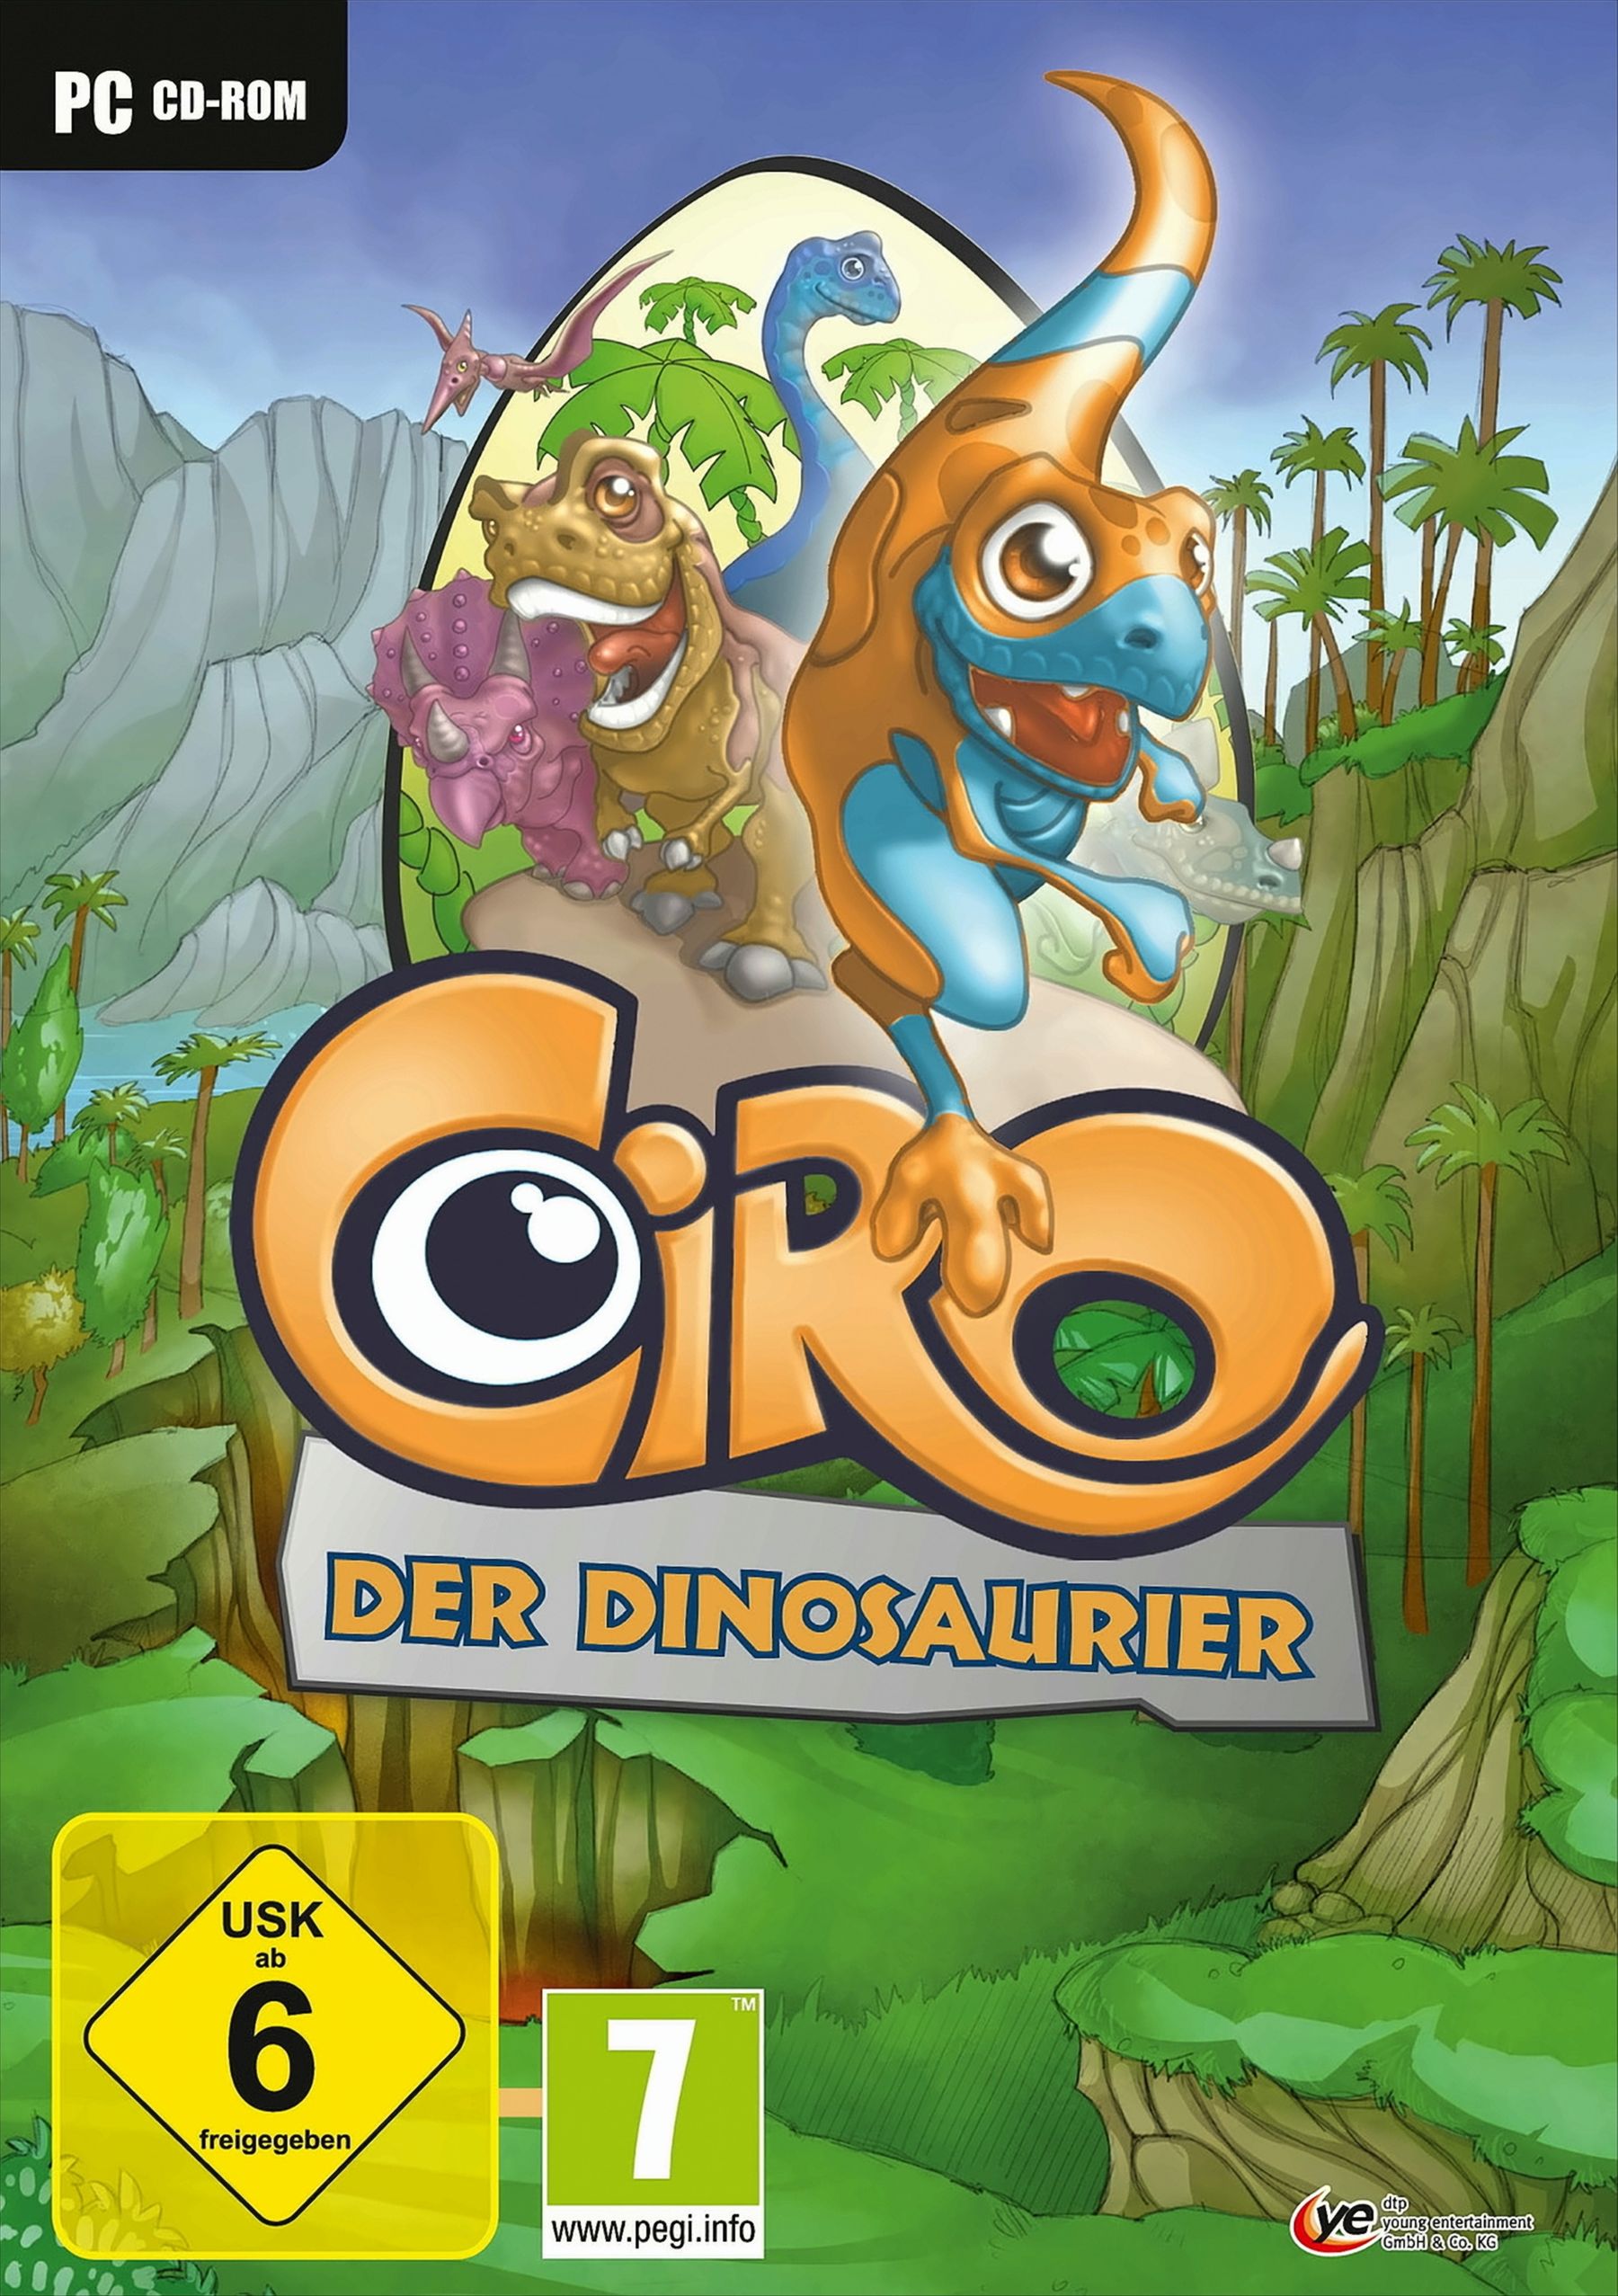 Ciro, der Dinosaurier von dtp